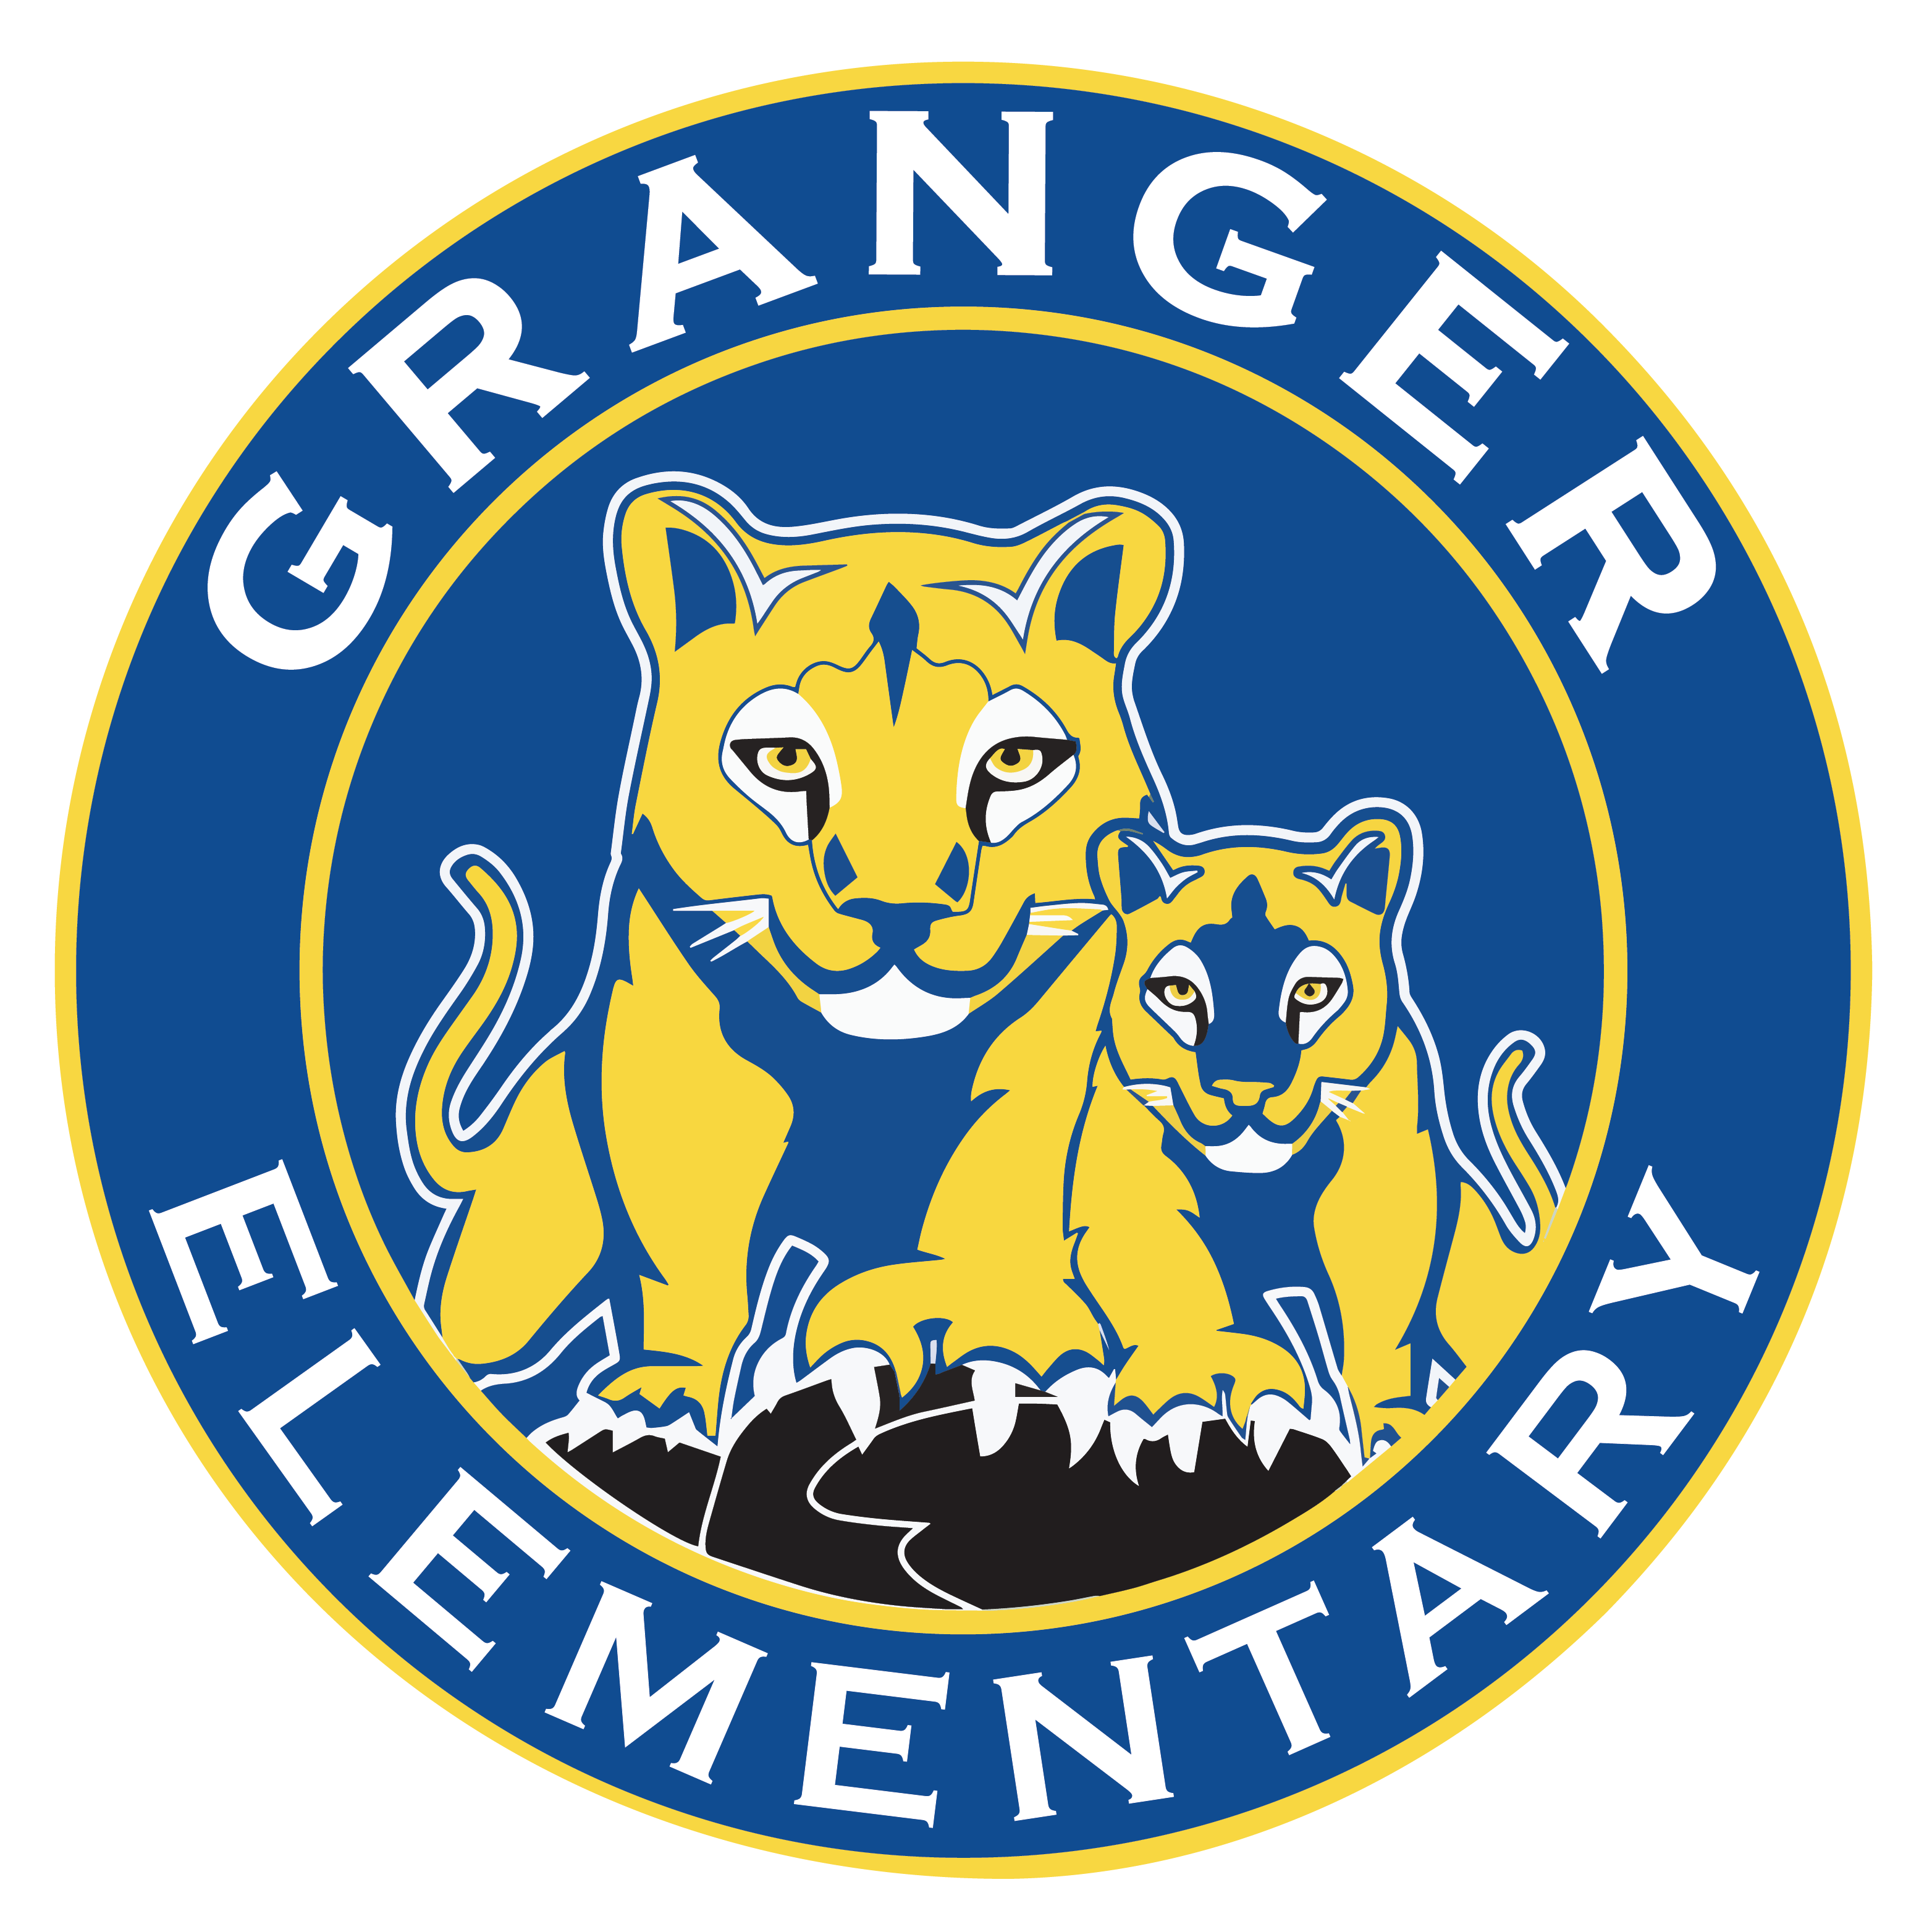 Granger Elementary